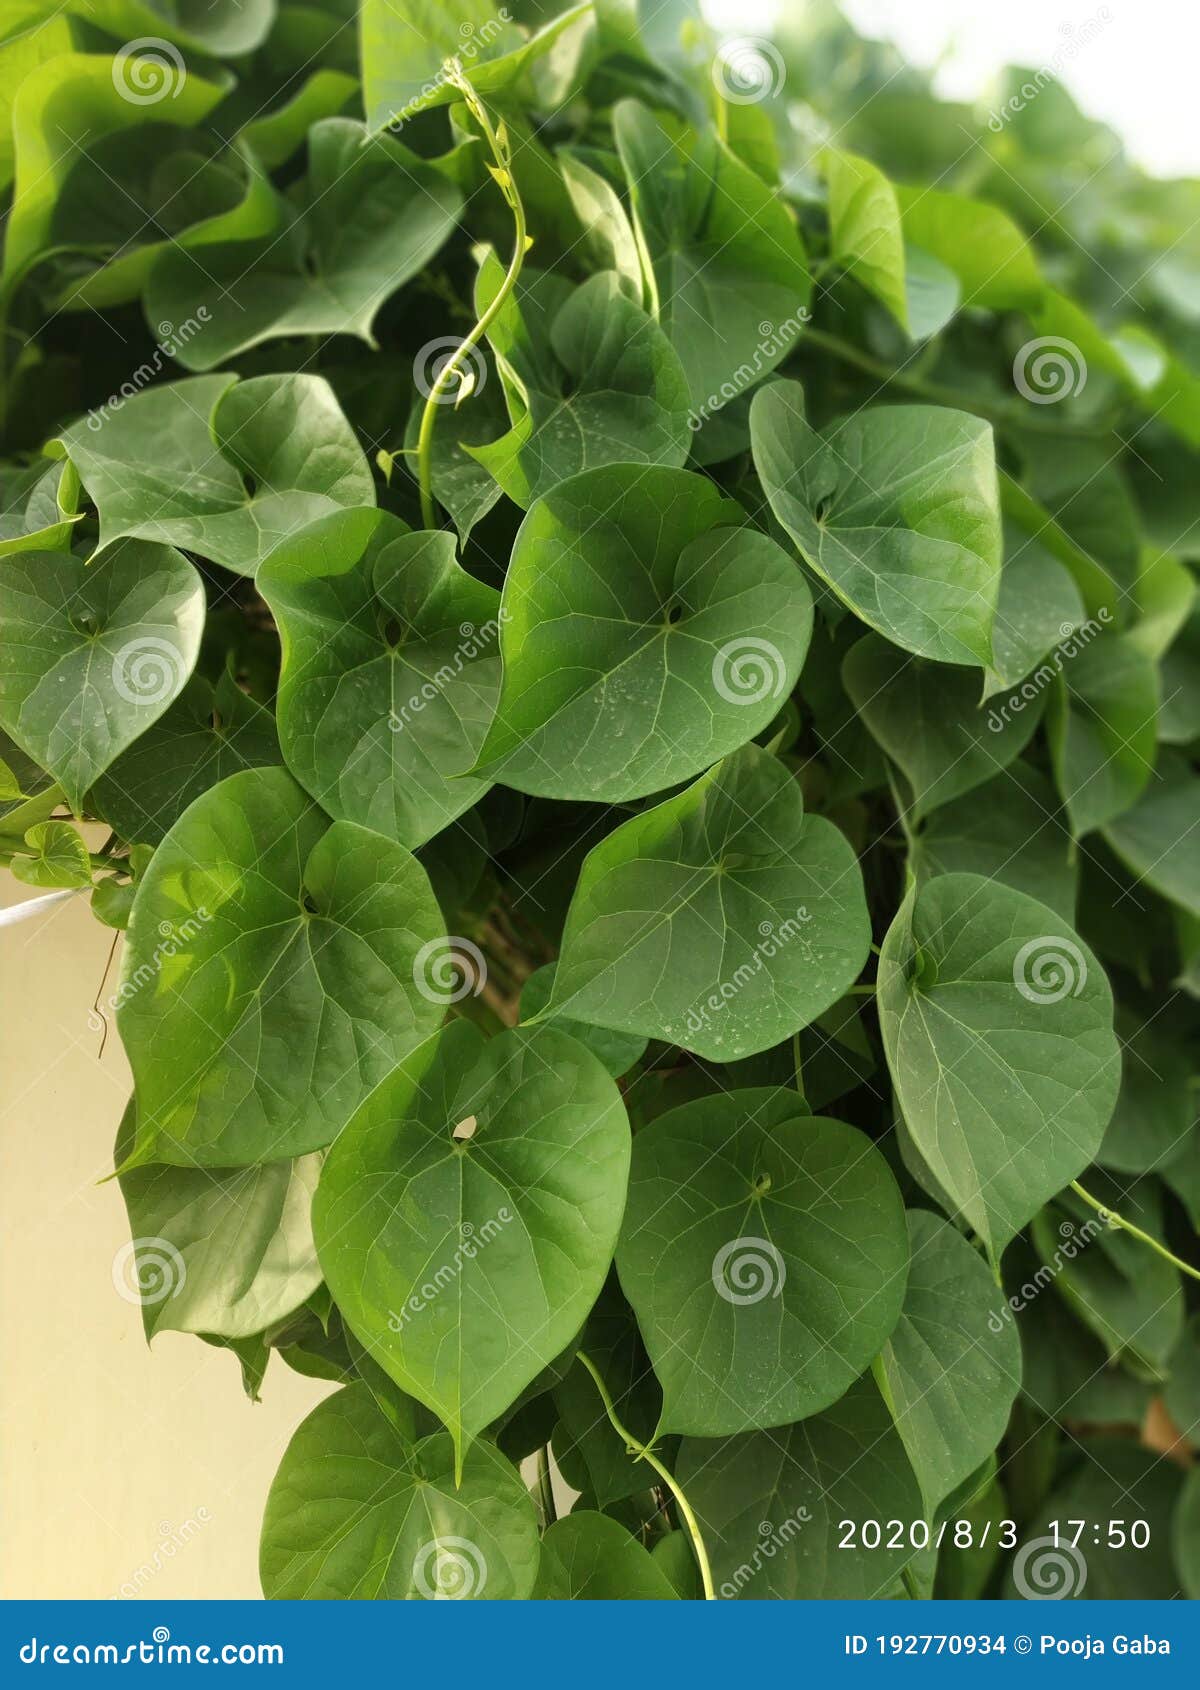 fresh giloy or tinospora cordifolia plant green leaves